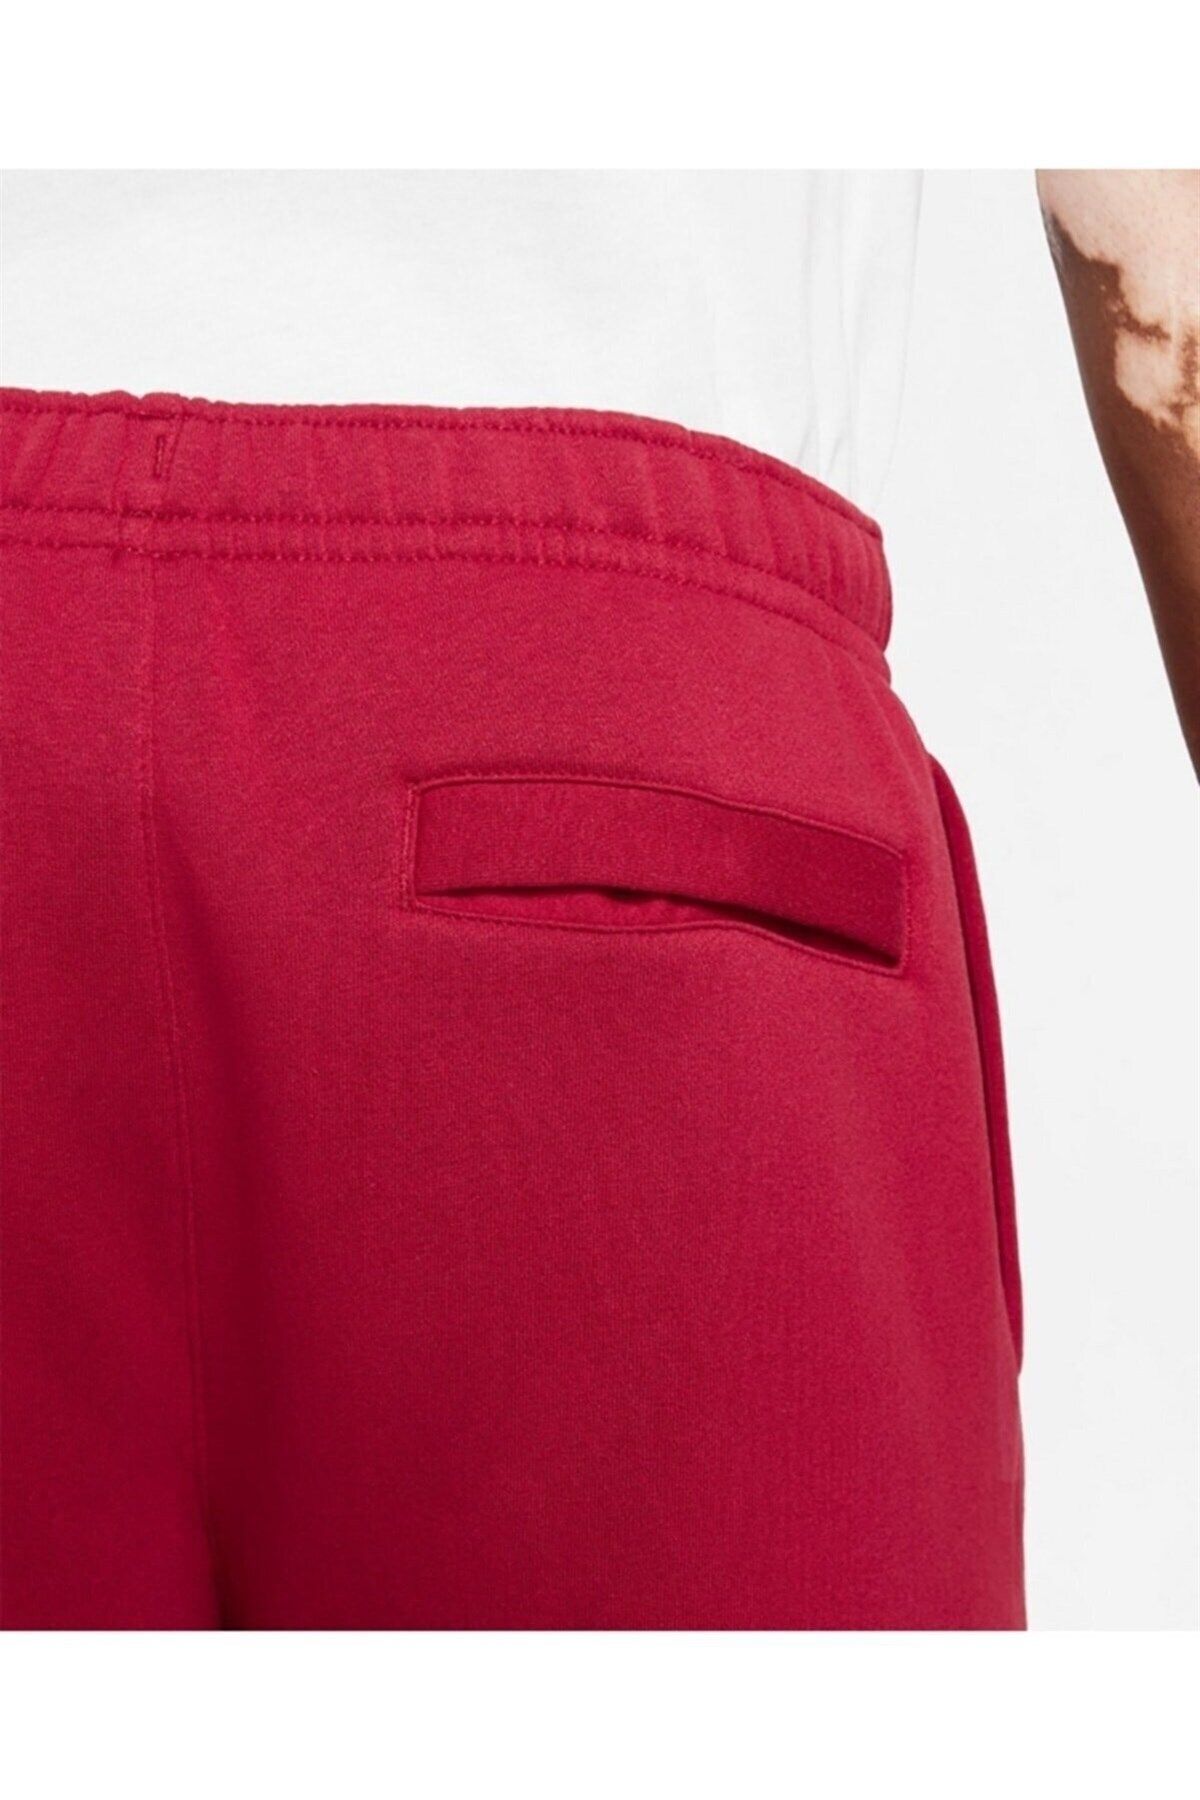 Nike Sportswear Club Fleece Red Color Men's Sweatpants Bv2671-690